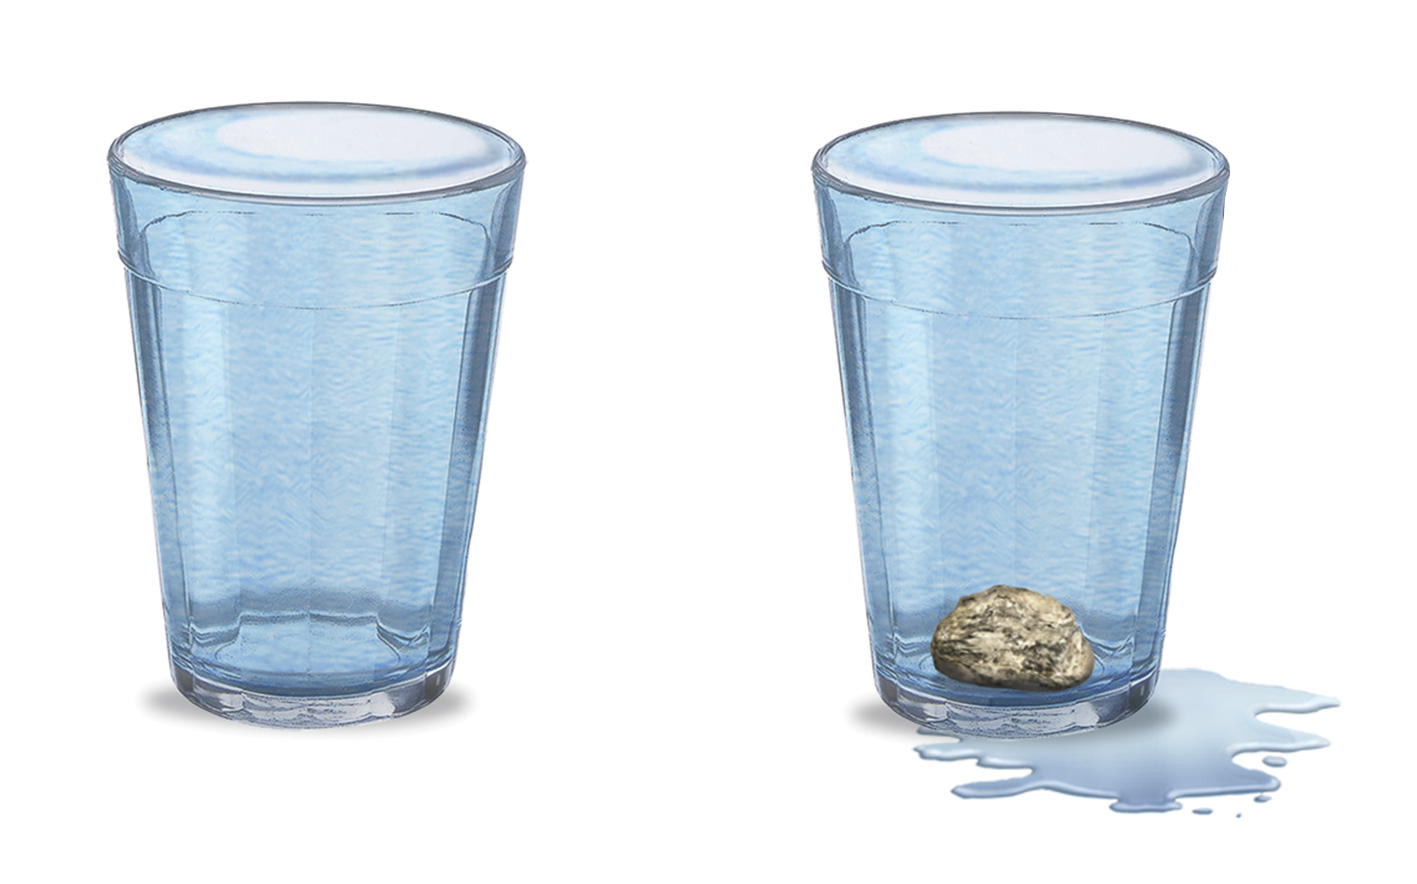 Ilustração. À esquerda, um copo de vidro com água até a boca, quase transbordando. À direita, um copo de vidro cheio de água e com uma pedra no fundo; ao redor do copo, água derramada.